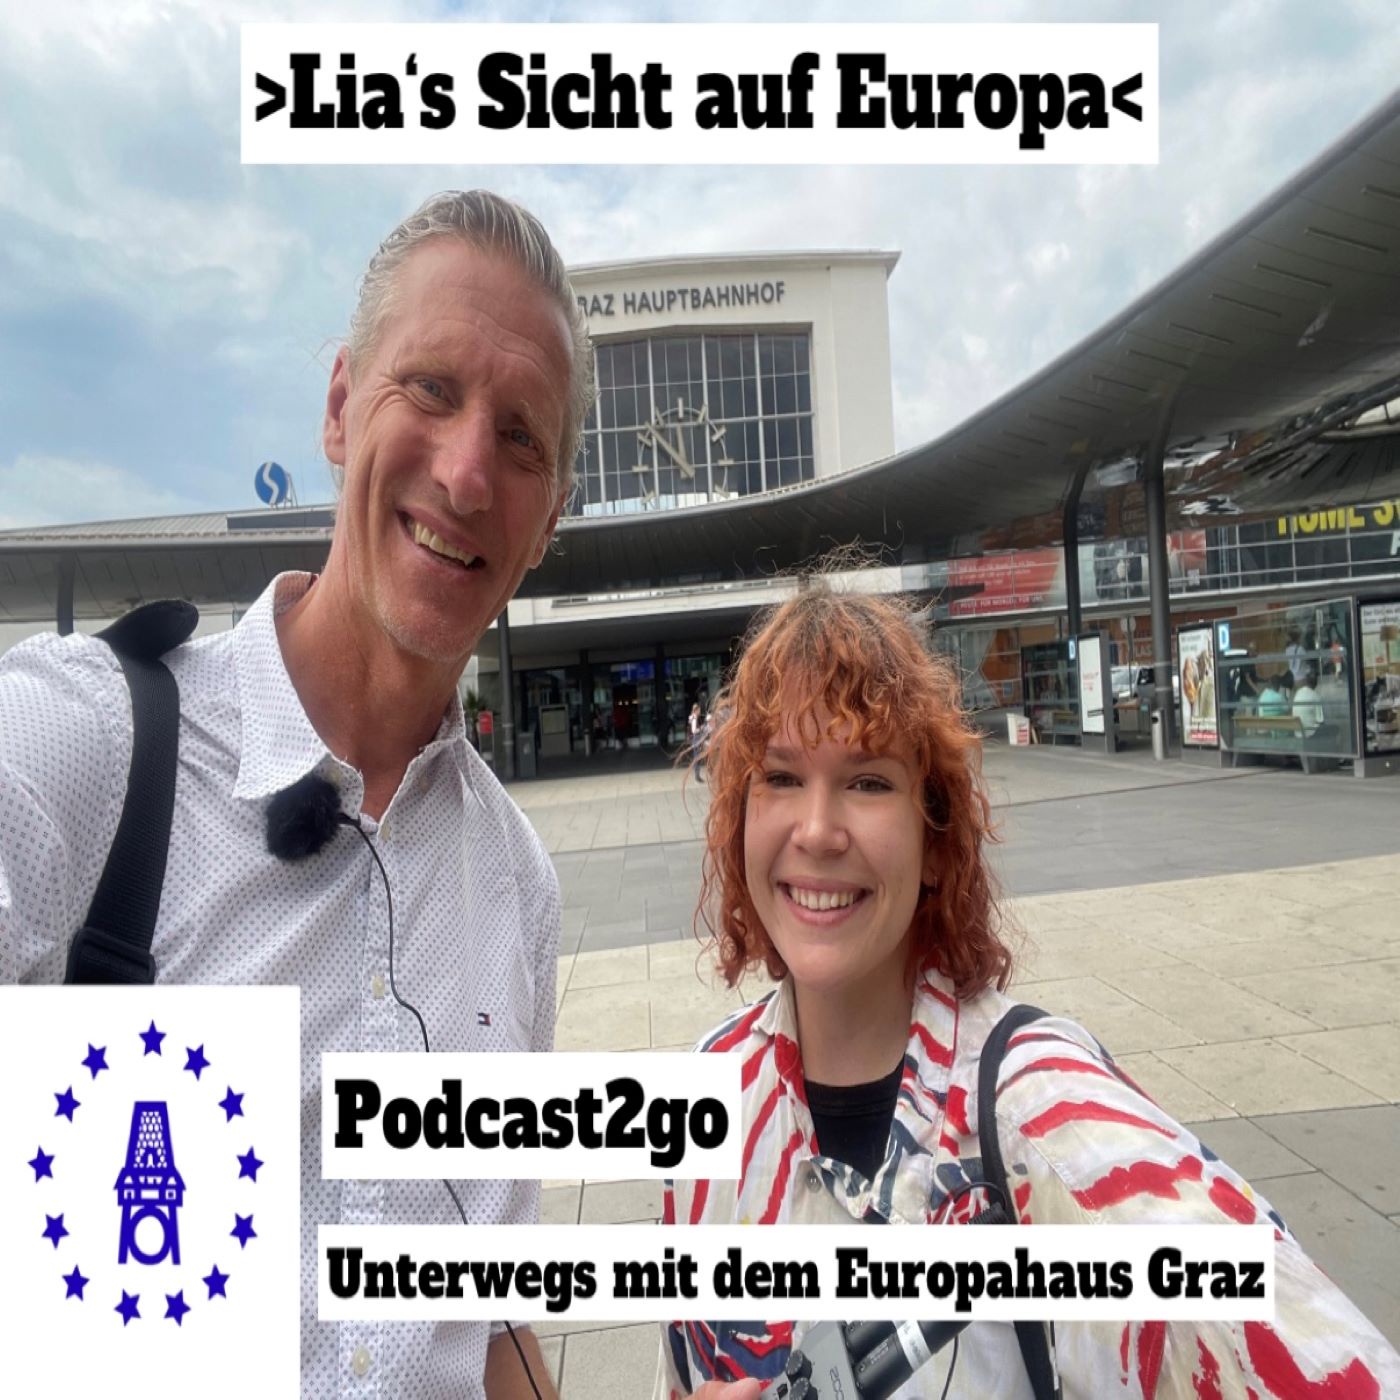 Podcast2go - Lia's Sicht auf Europa